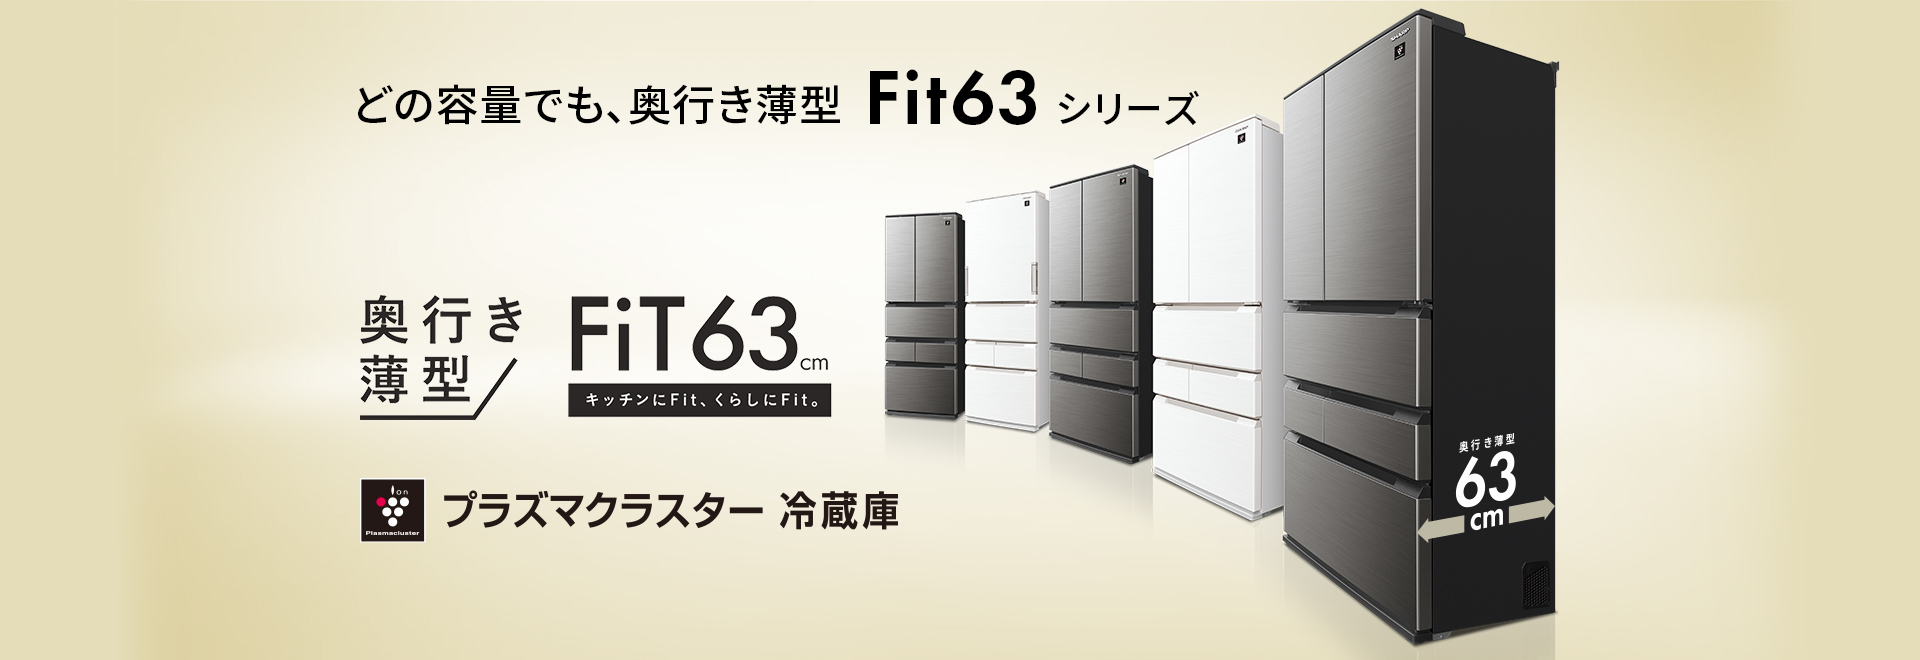 どの容量でも、奥行き薄型Fit63シリーズが登場。スペシャルページにリンクします。